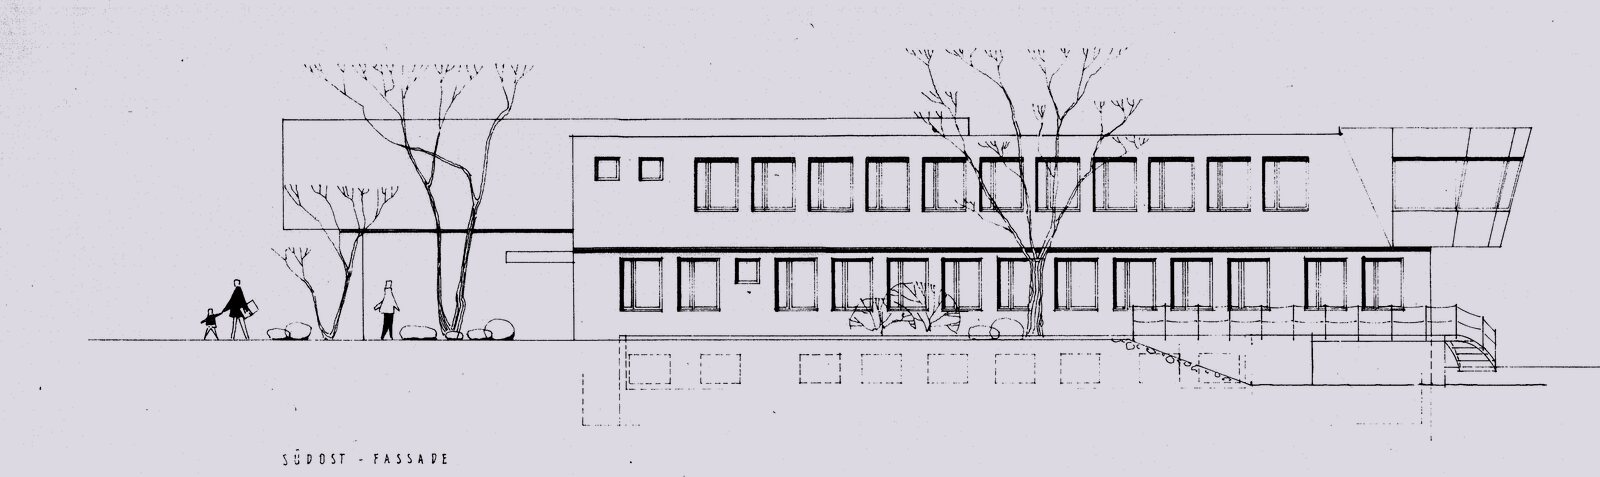 Oberrieden - Gesamtinstandsetzung Betriebsgebäude
Seepolizei Oberrieden - Schmid Schaerer Architekten Zürich